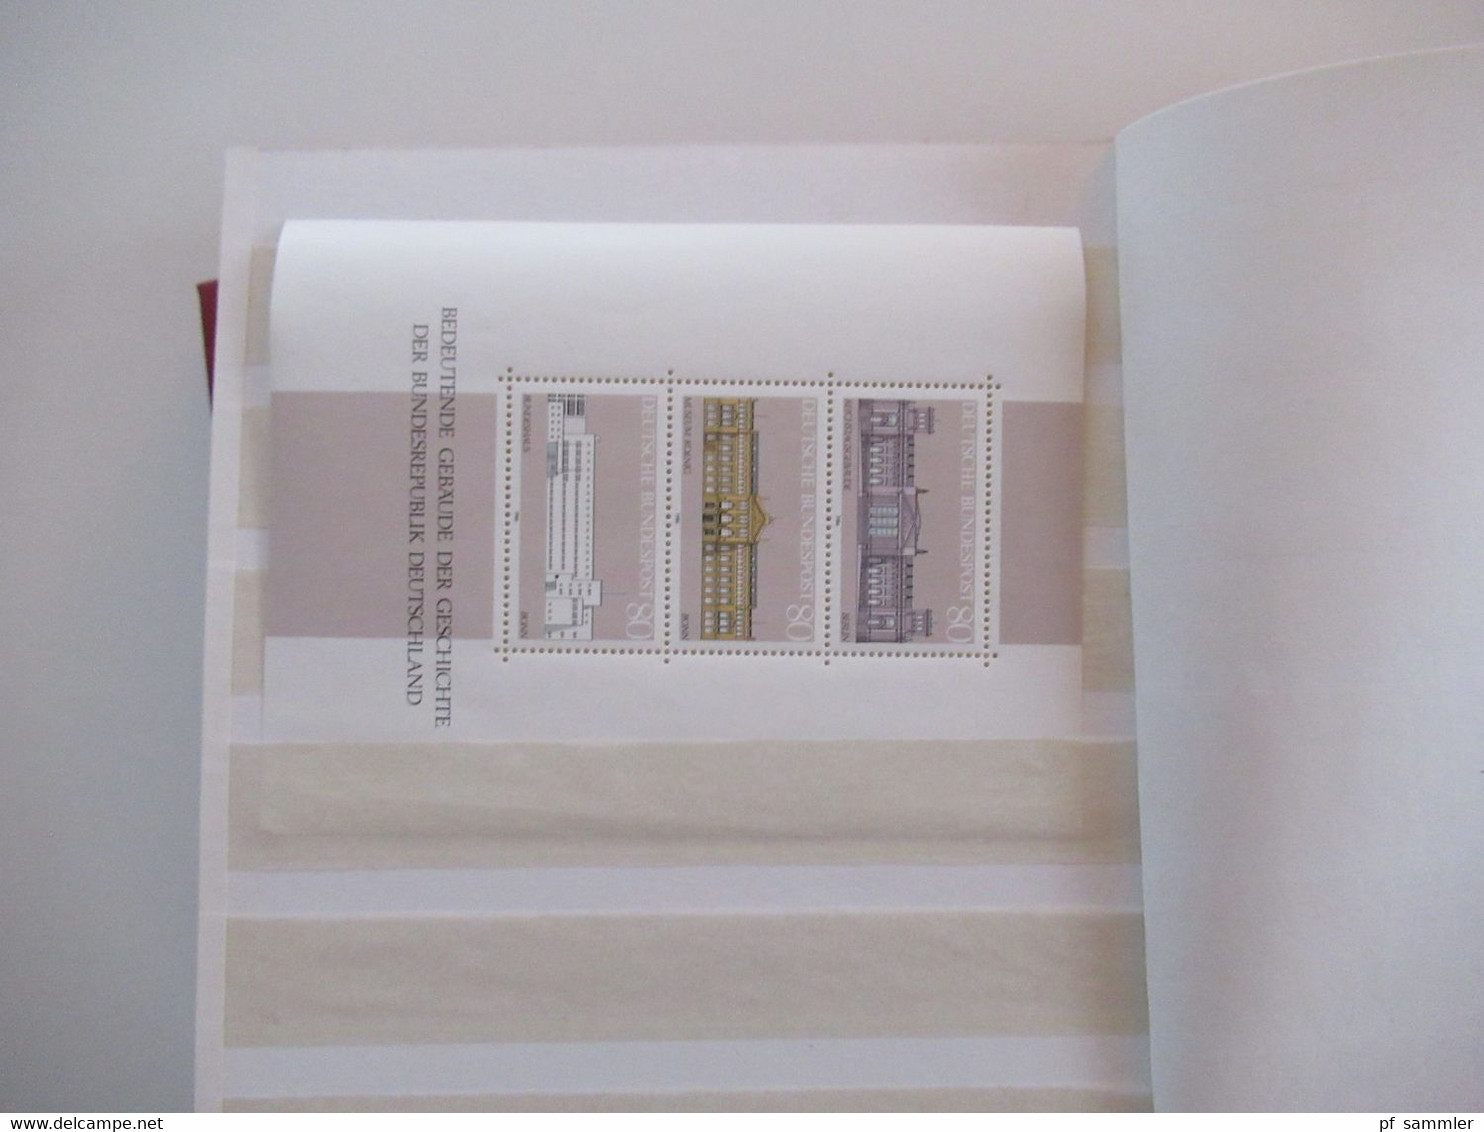 BRD ** / postfrisch 2 kleine Steckbücher mit Marken der Jahre 1959 - 1994 auch Blocks! viele Marken / Stöberposten